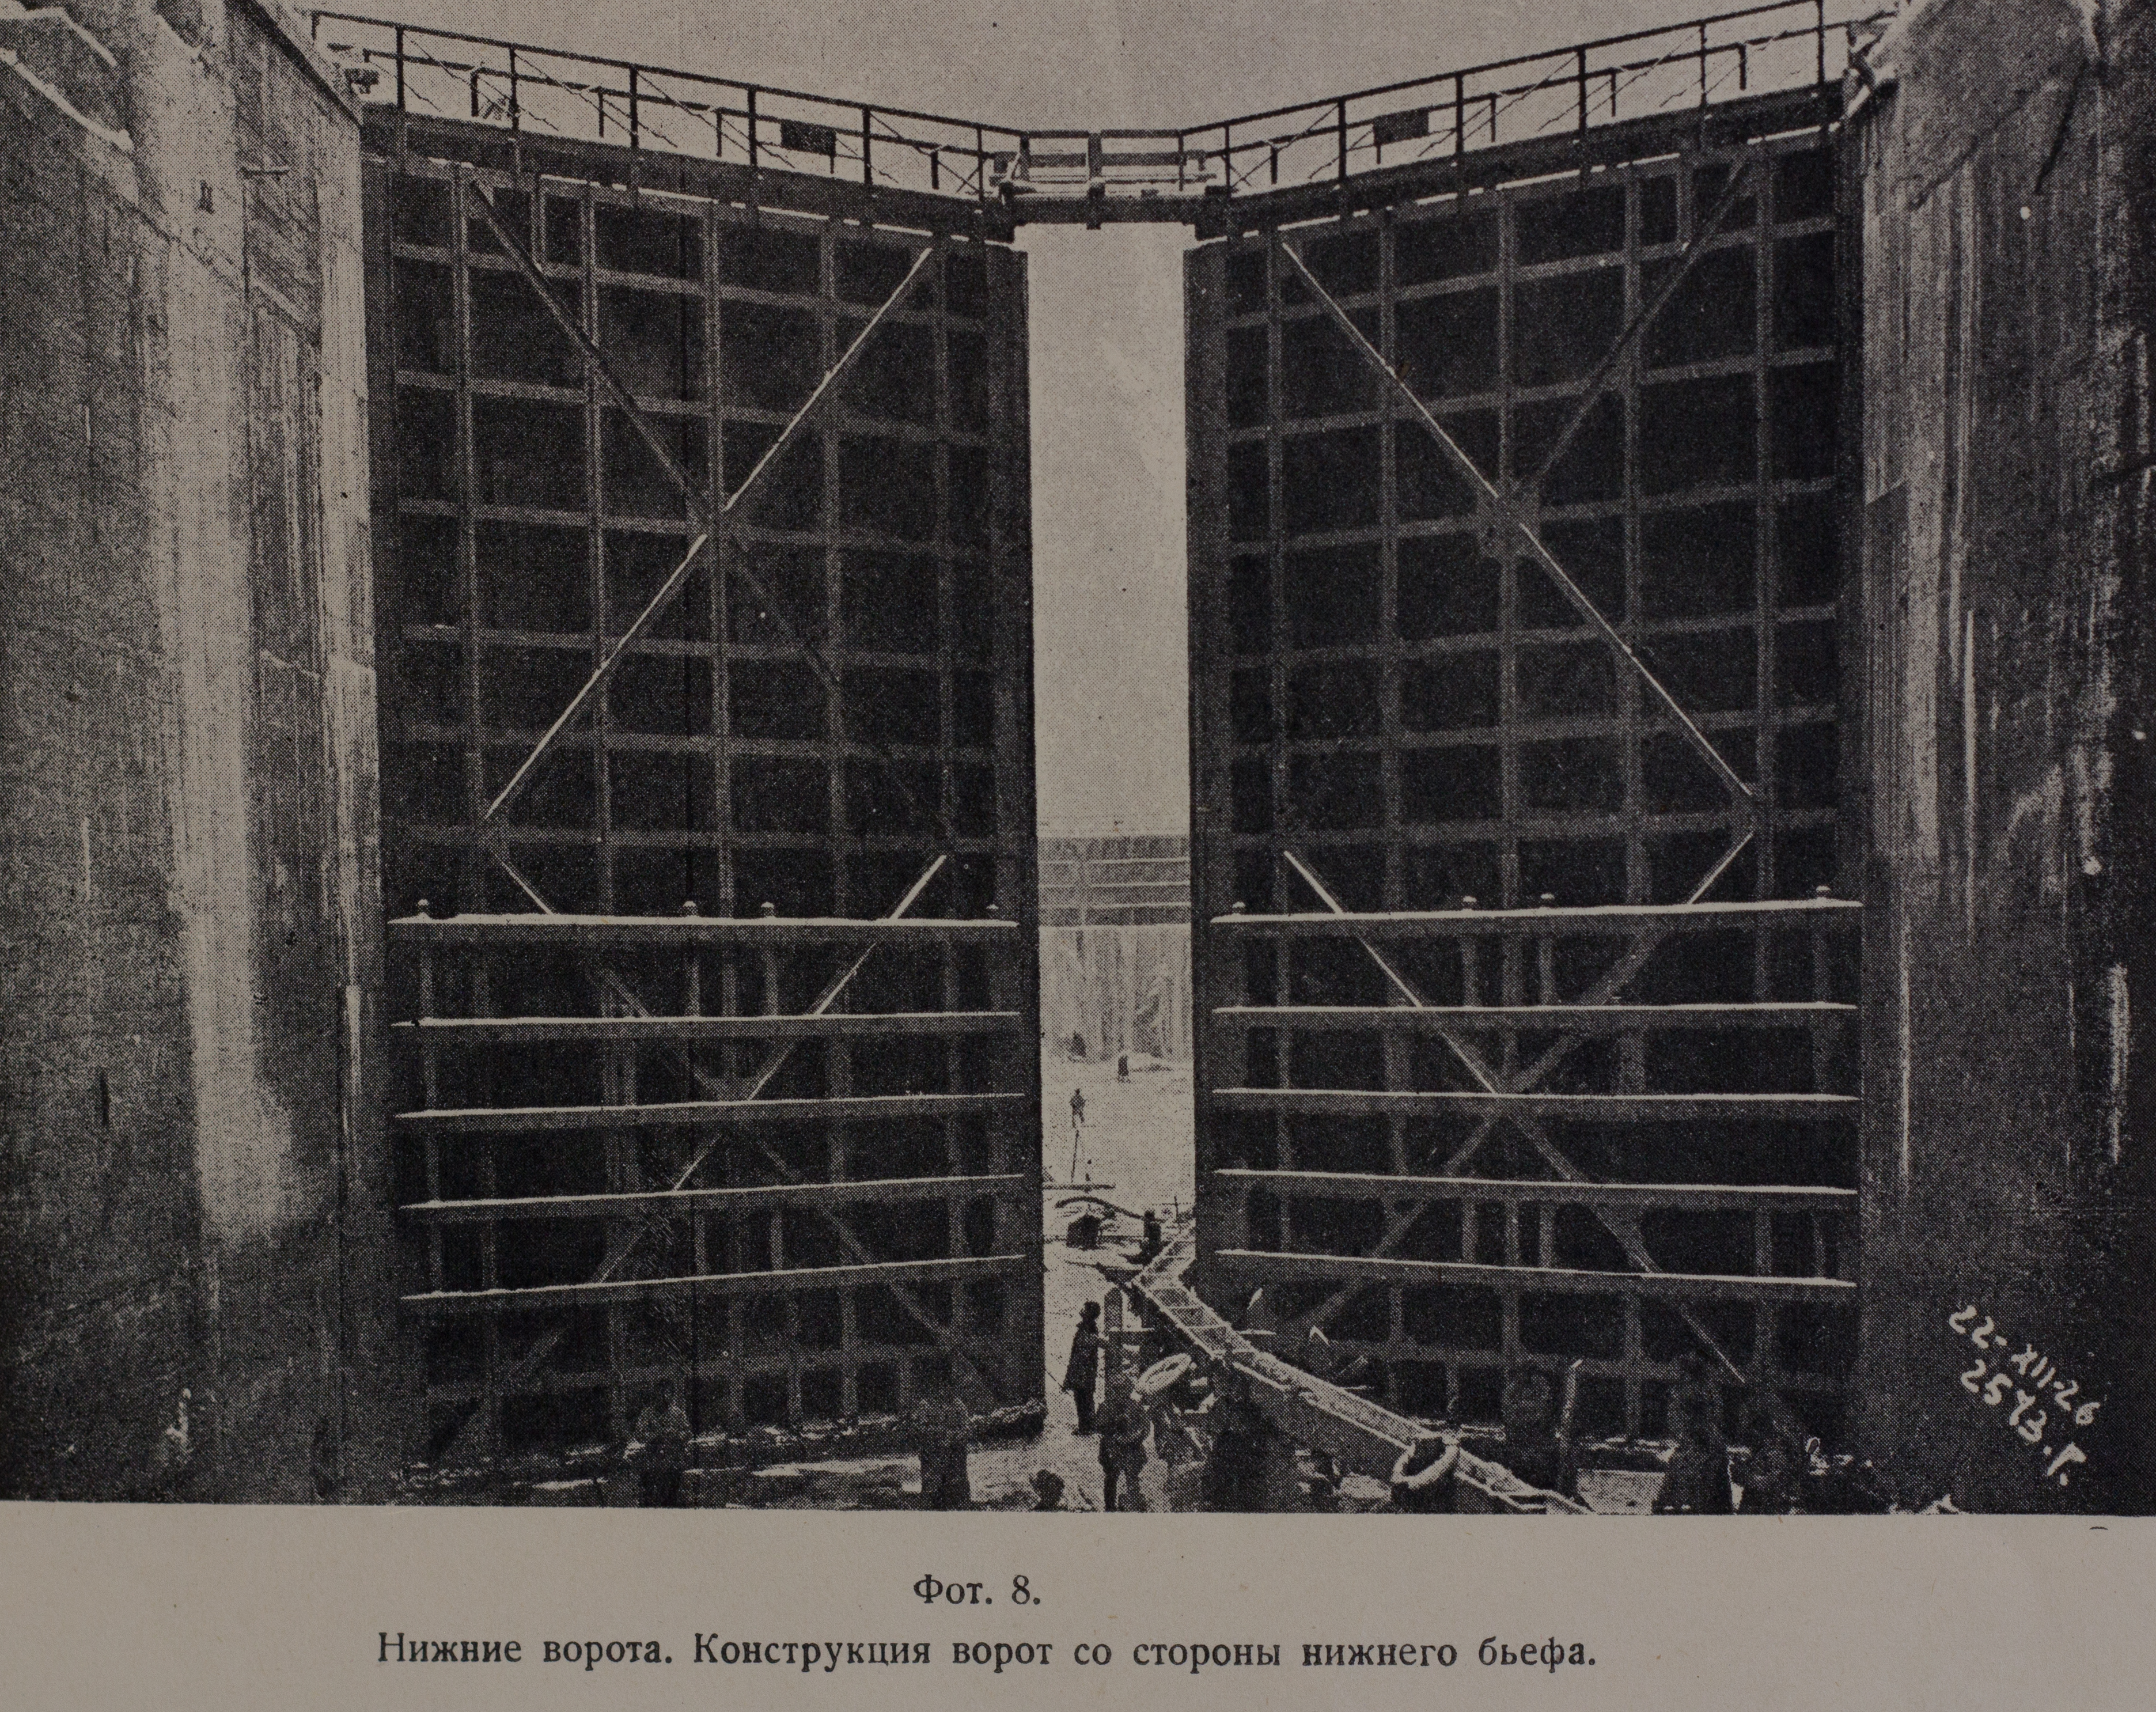 Нижние ворота. Конструкция ворот со стороны нижнего бьефа (1926 г.)